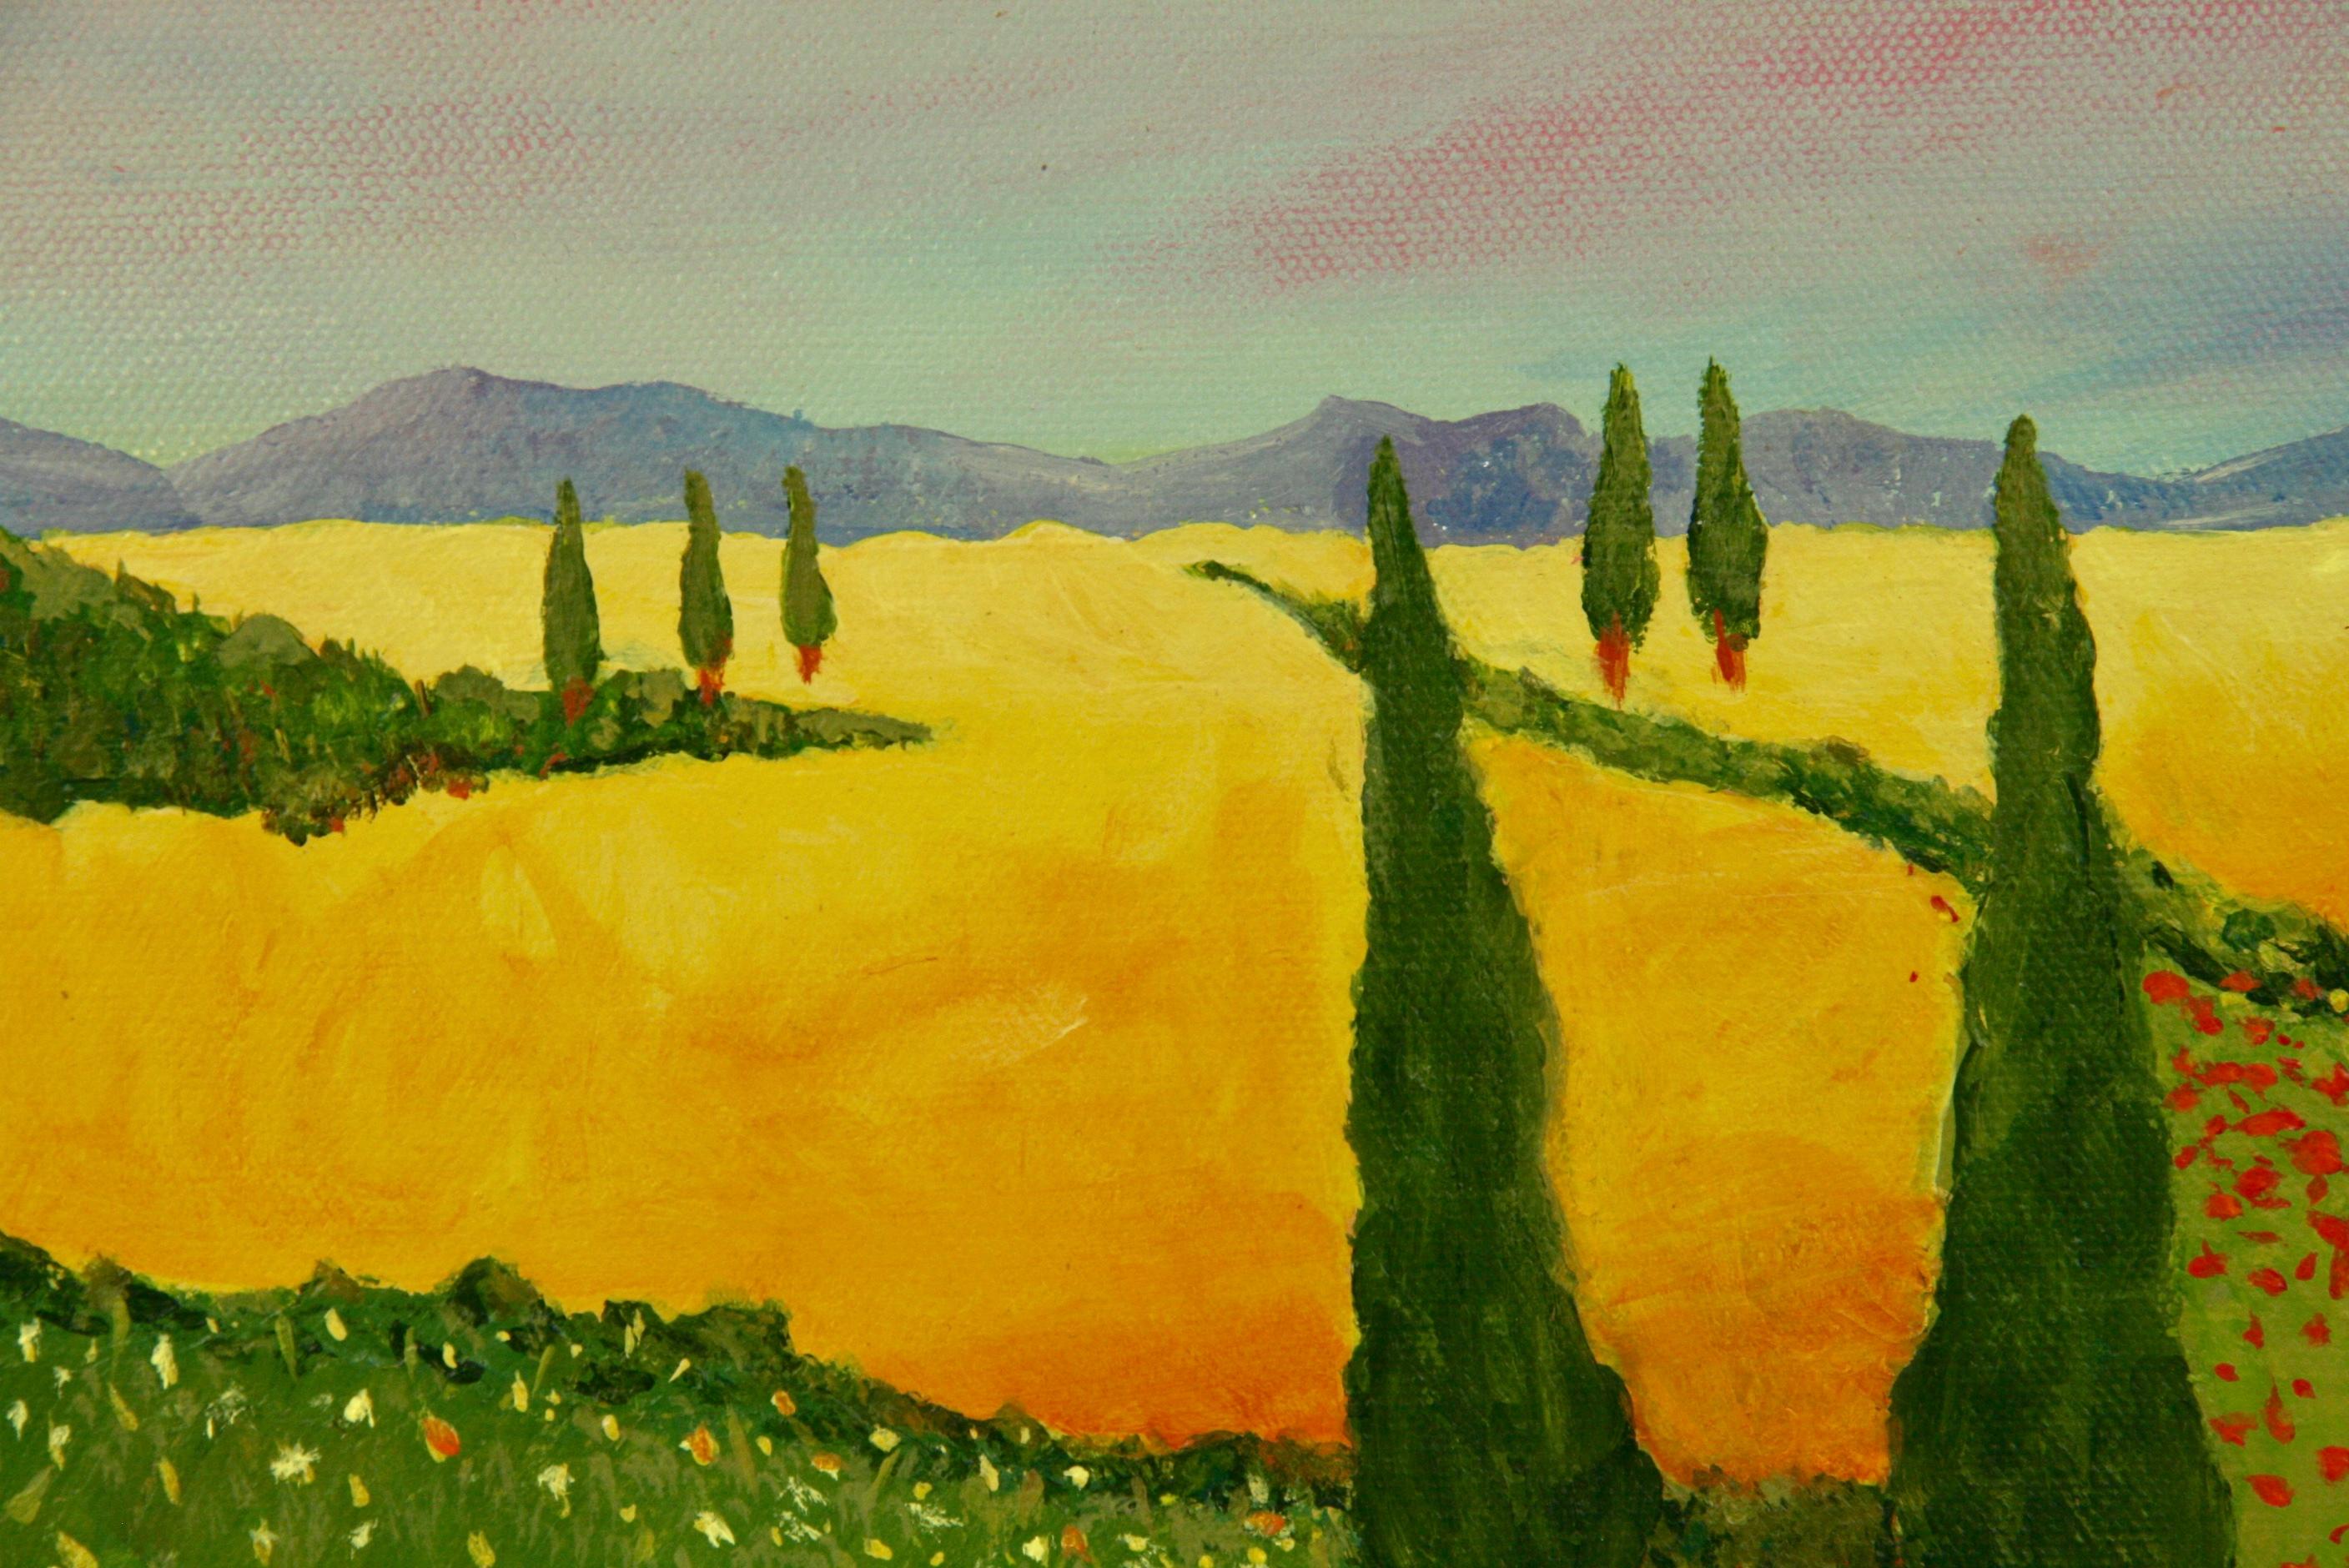 5-3481 Acrylique sur toile
Représentation d'un paysage toscan
Signé P.Russo